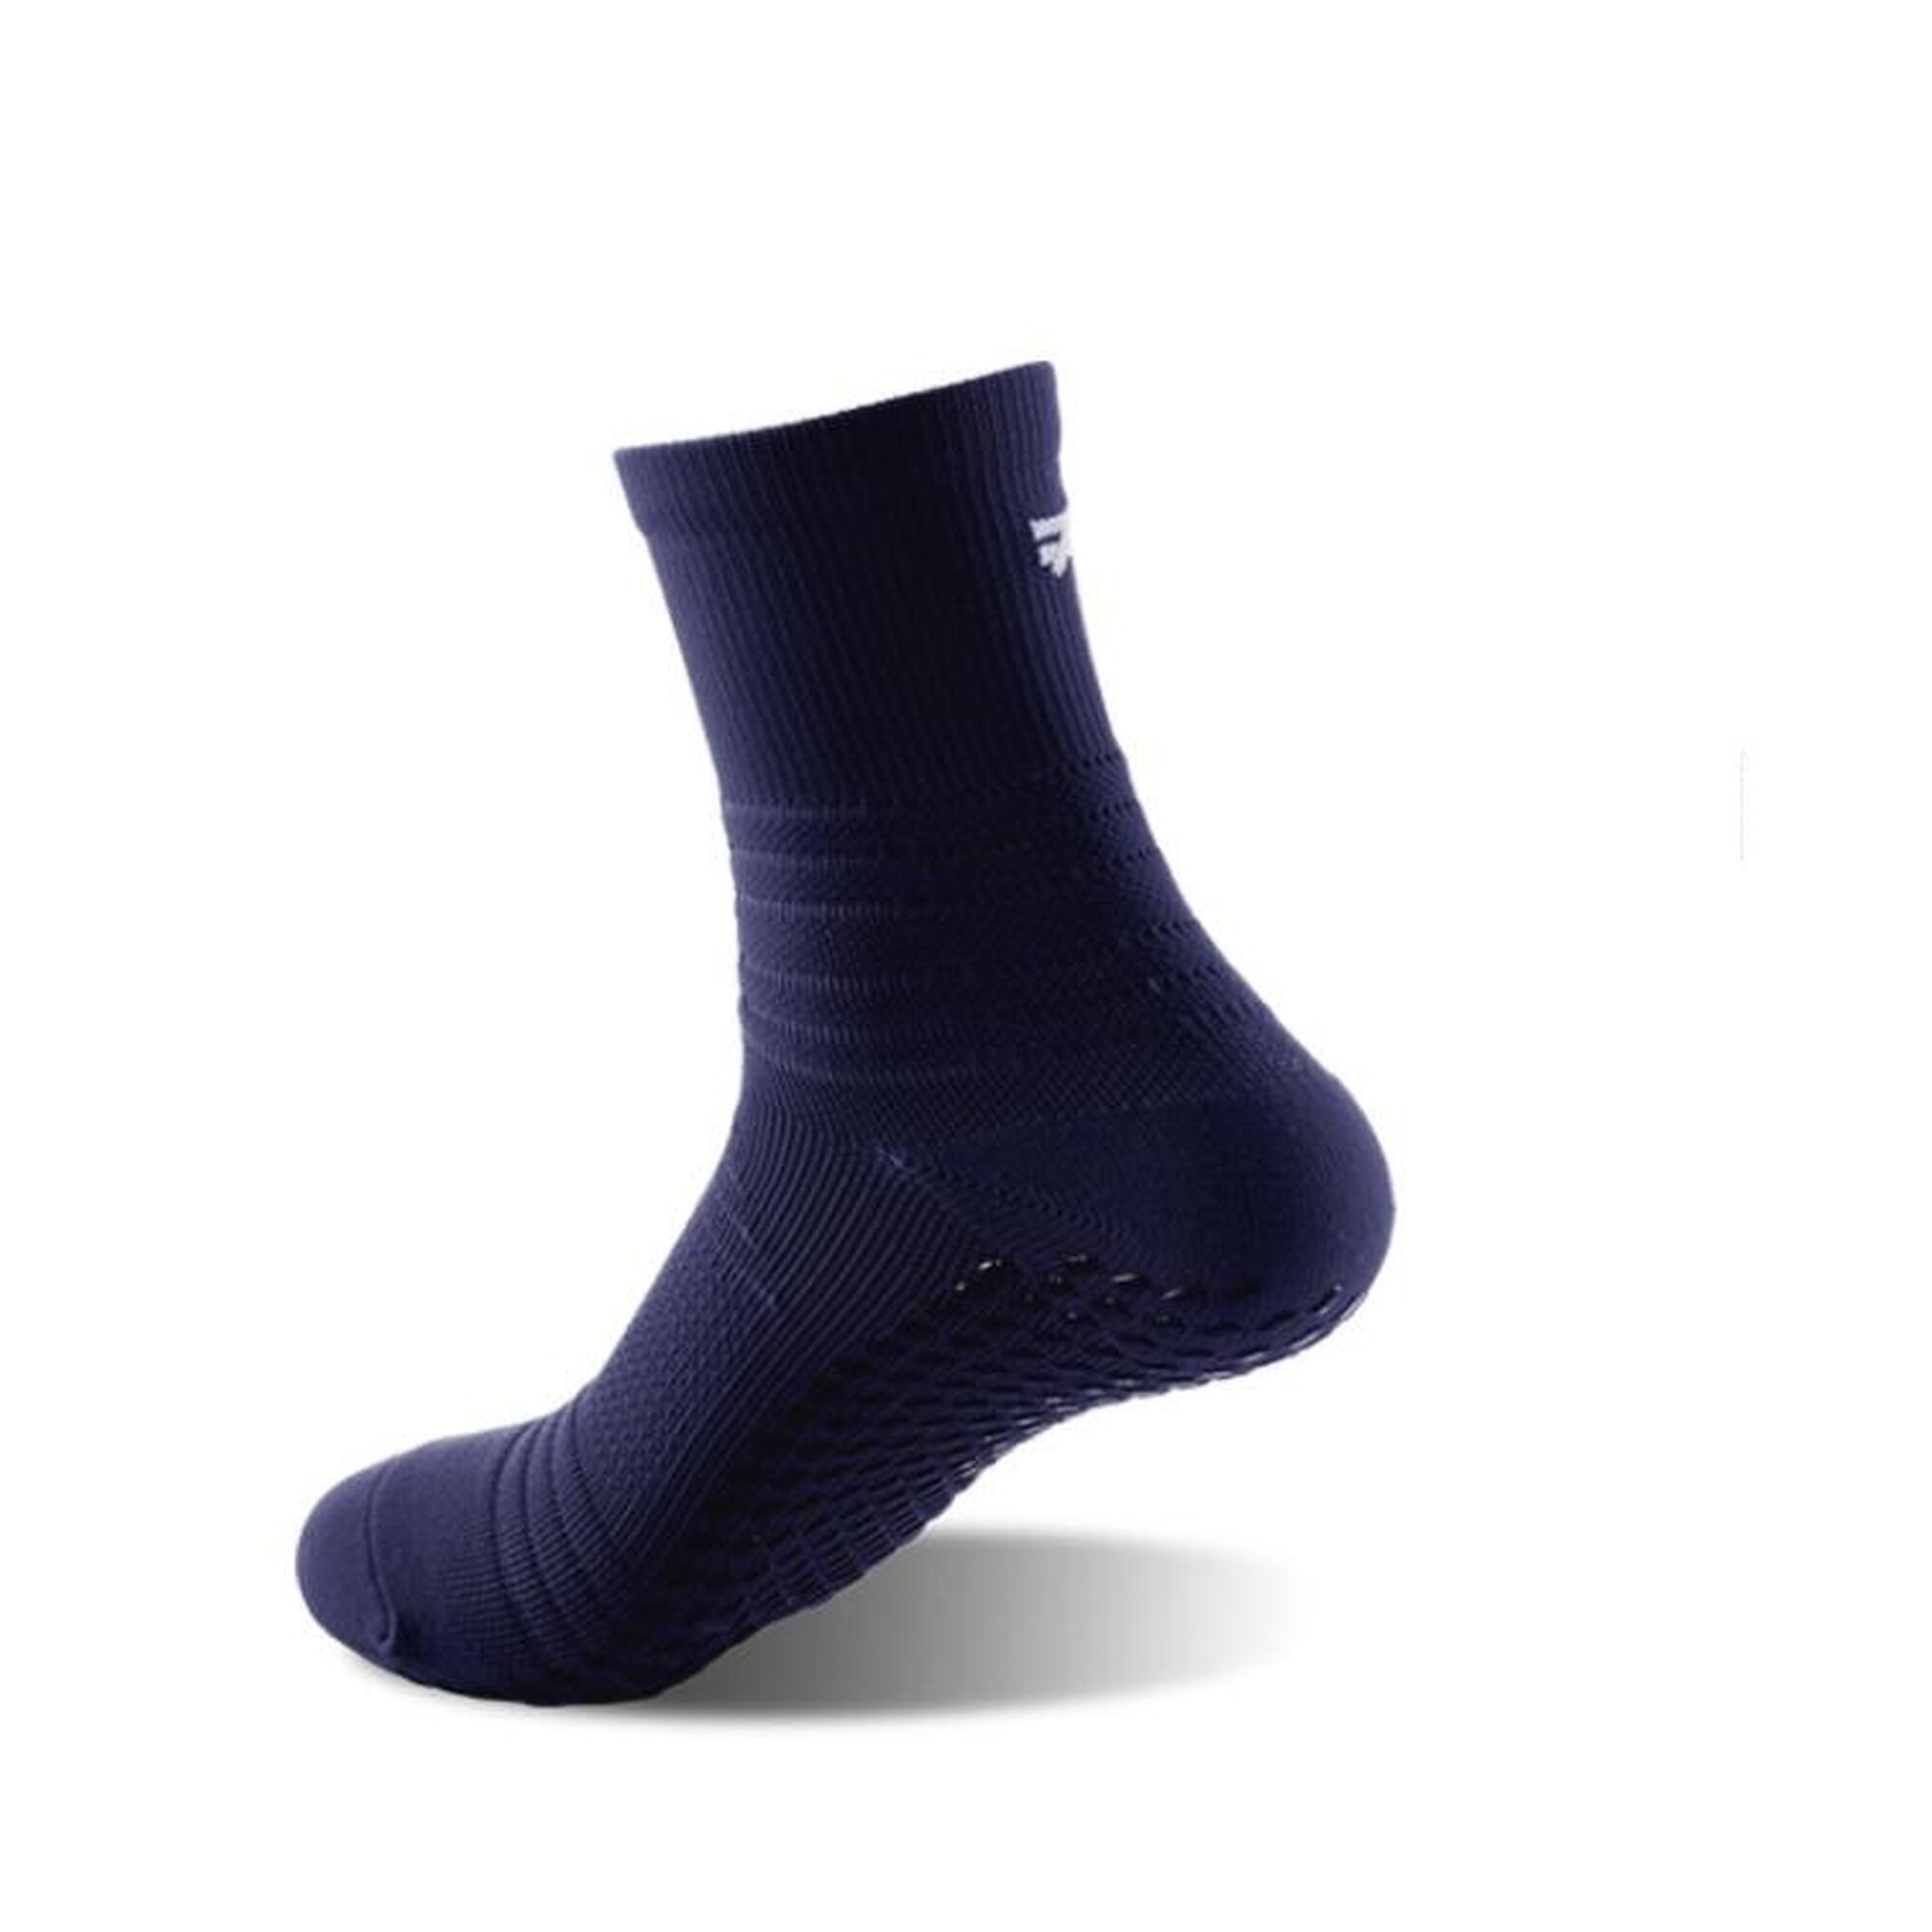 G-ZOX Tech Grip Socks 3 Pairs (Yellow x 1 + Red x 1 + Blue x 1 - M)